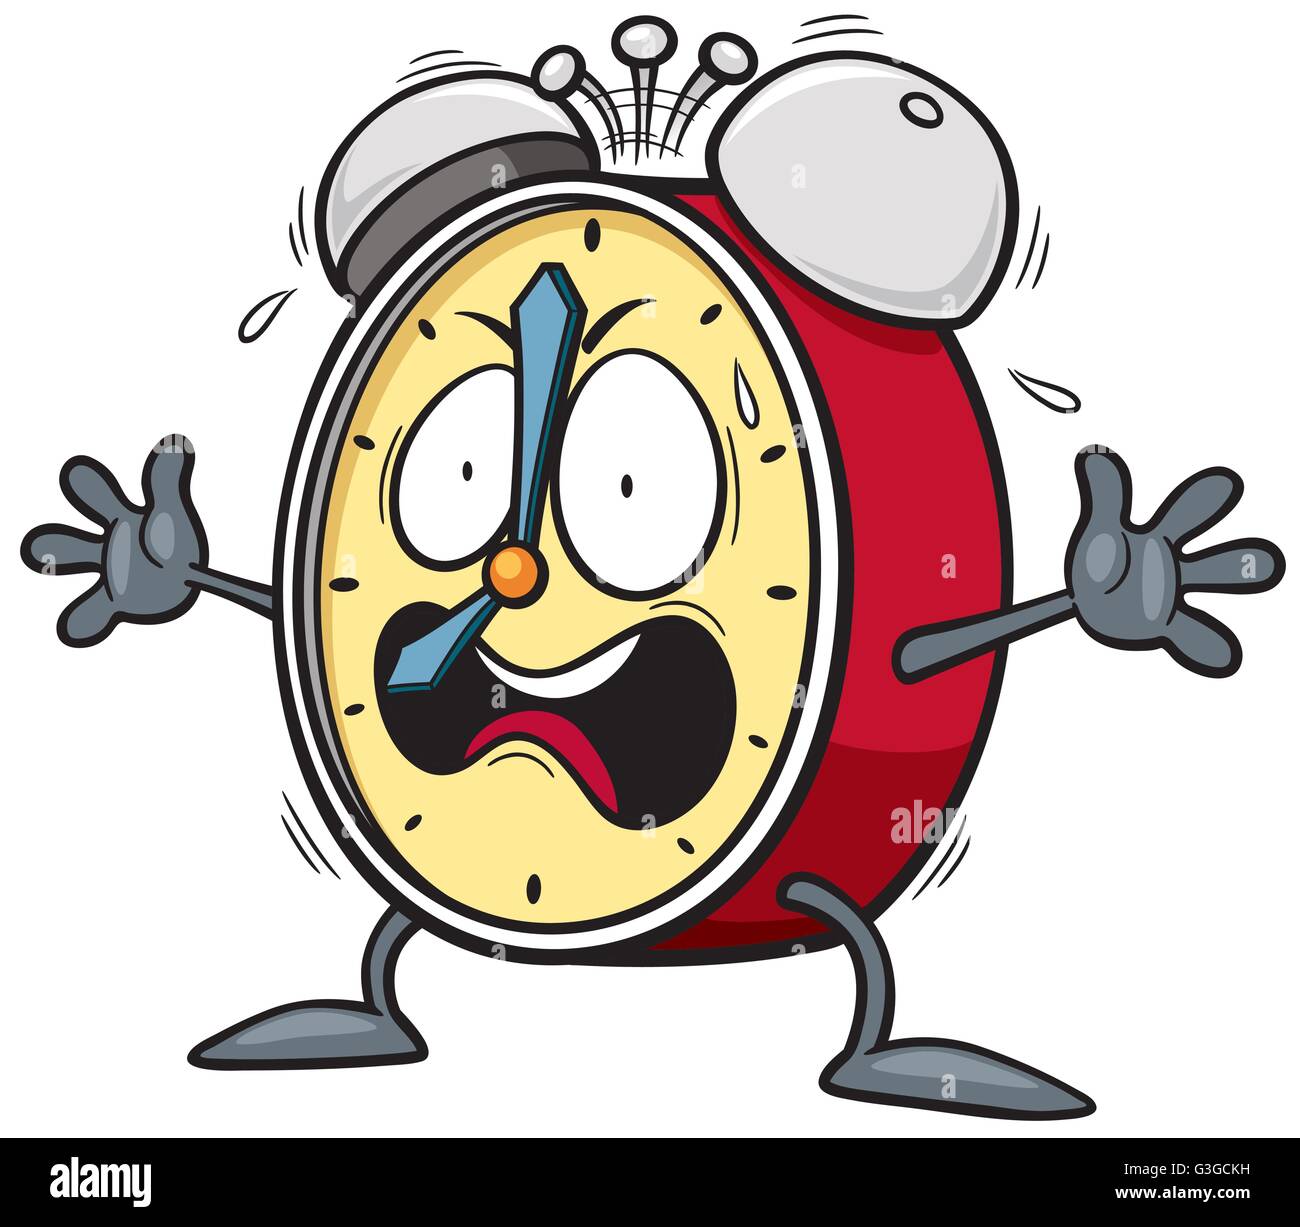 Ilustración de estilo de dibujos animados de un reloj despertador